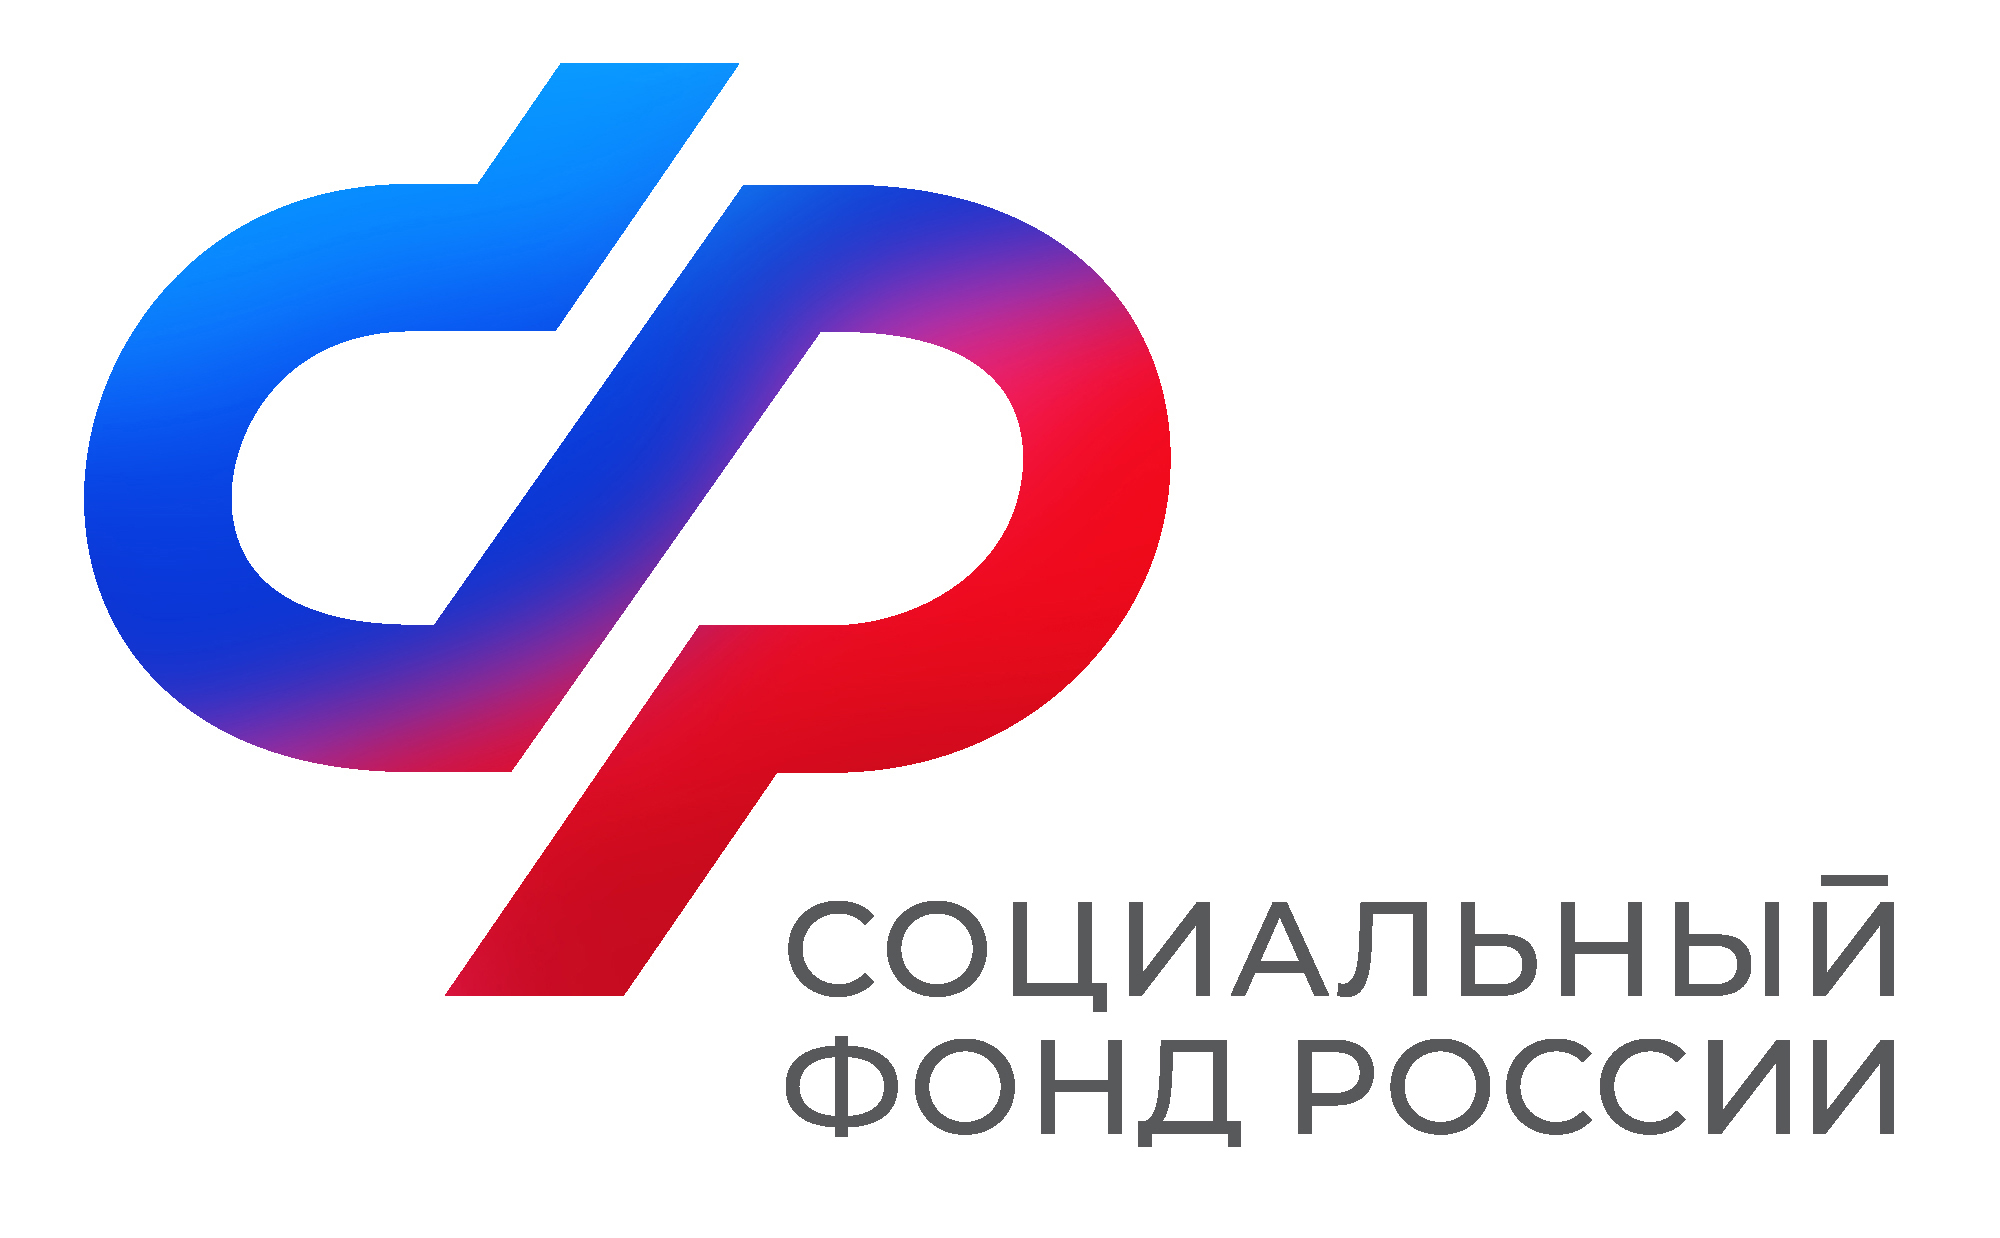 793 воронежца, которые ранее пострадали на производстве, прошли лечение в Центрах реабилитации Социального фонда России в 2023 году.